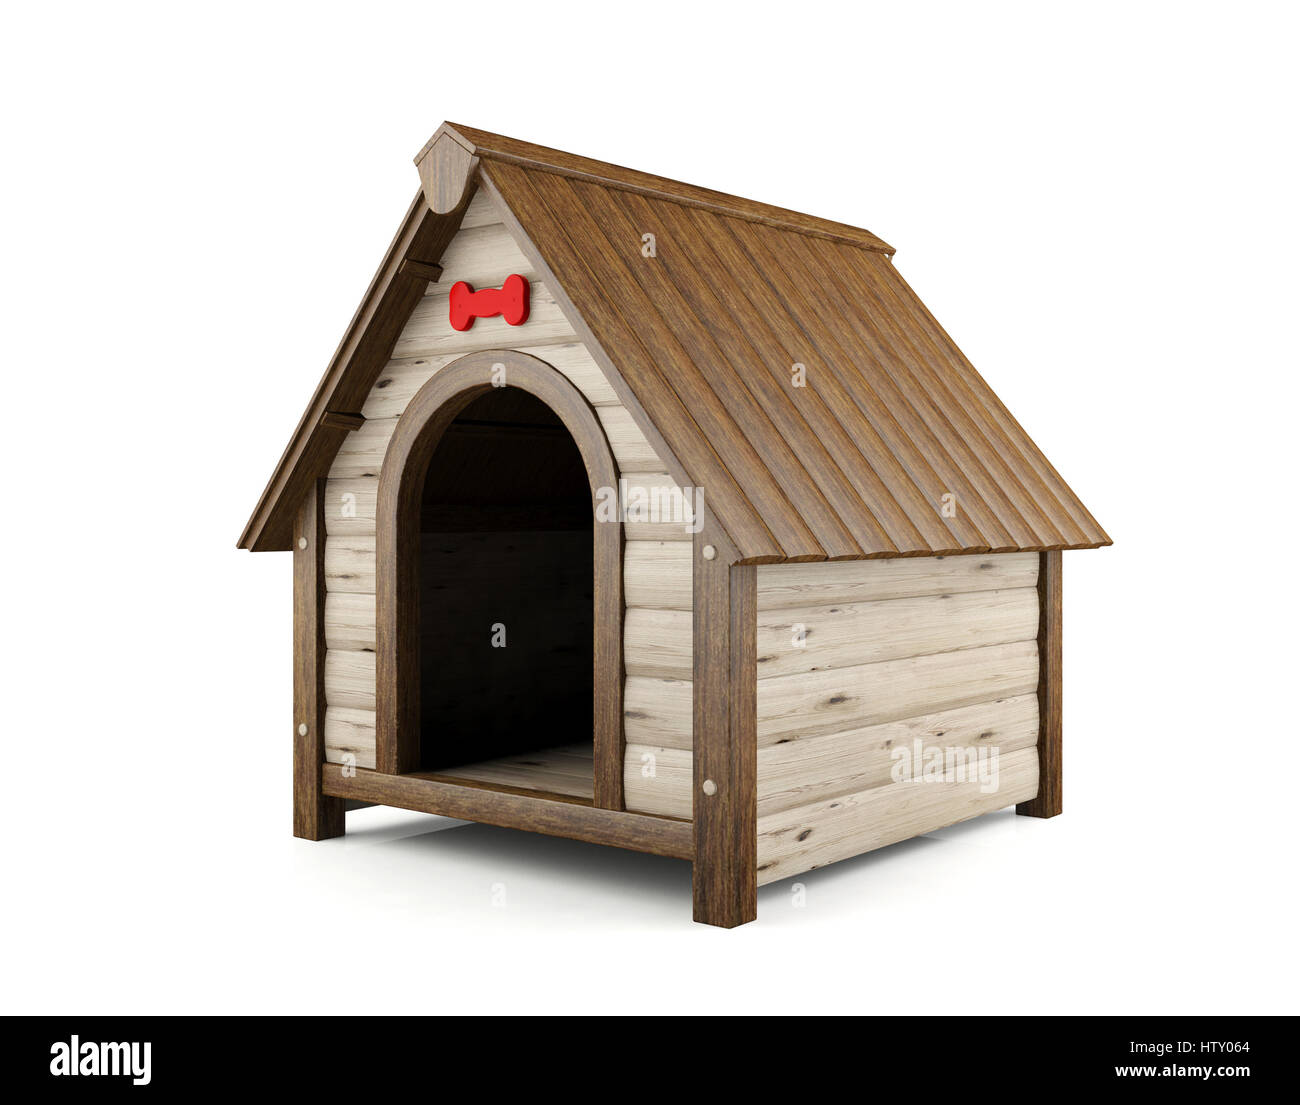 Wooden dog house isolated on white background Stock Photo